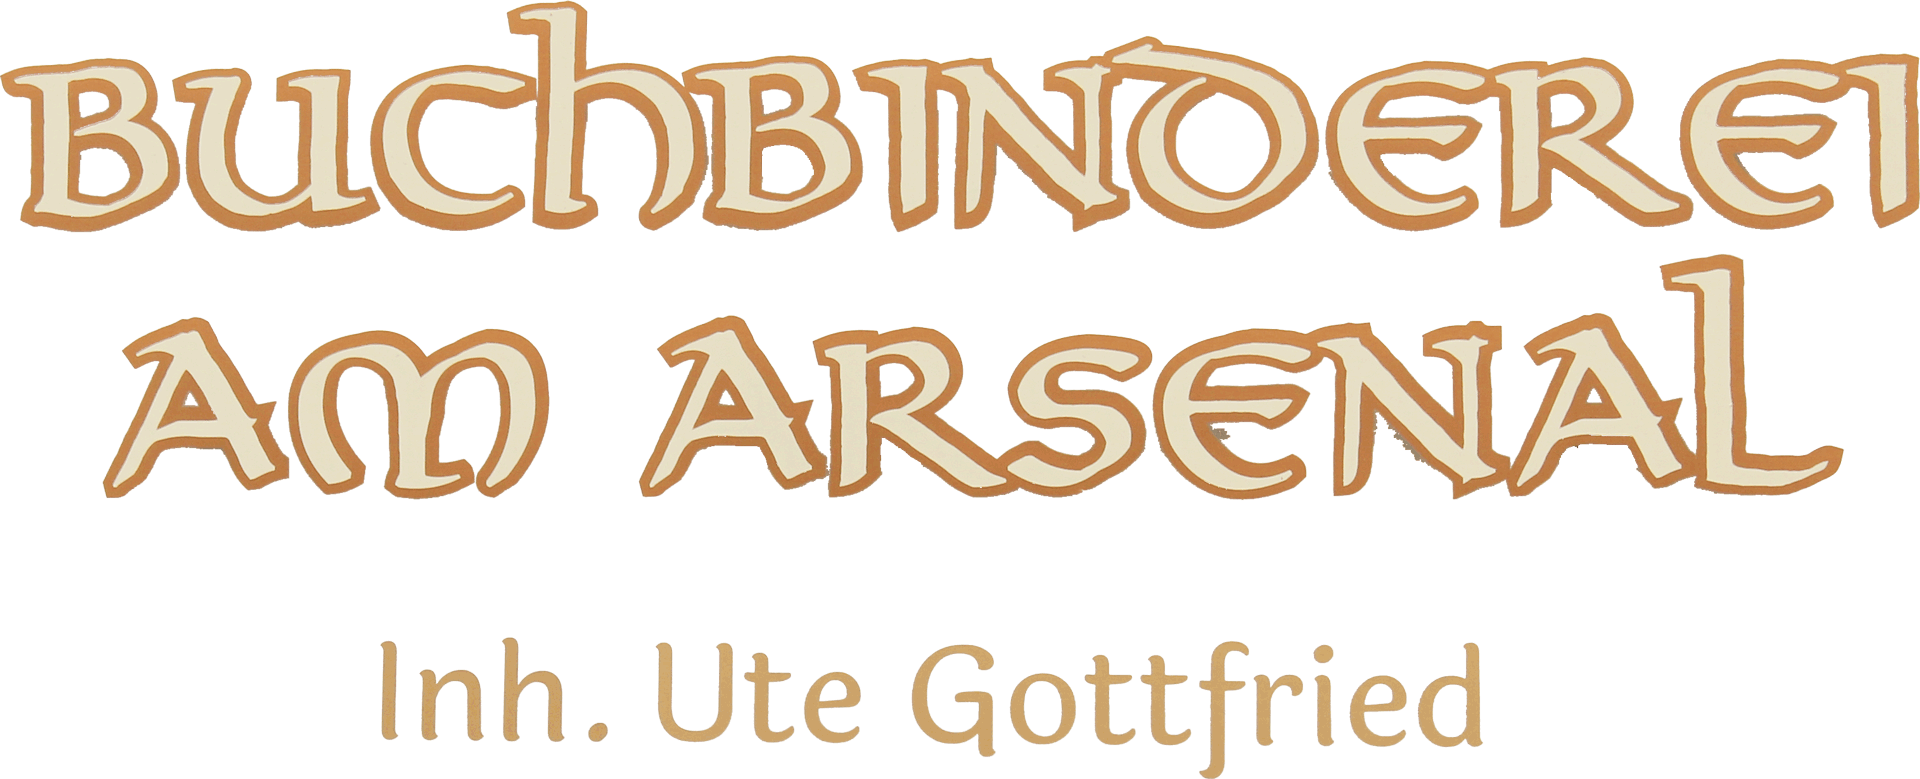 Buchbinderei am Arsenal in Schwerin Logo Text